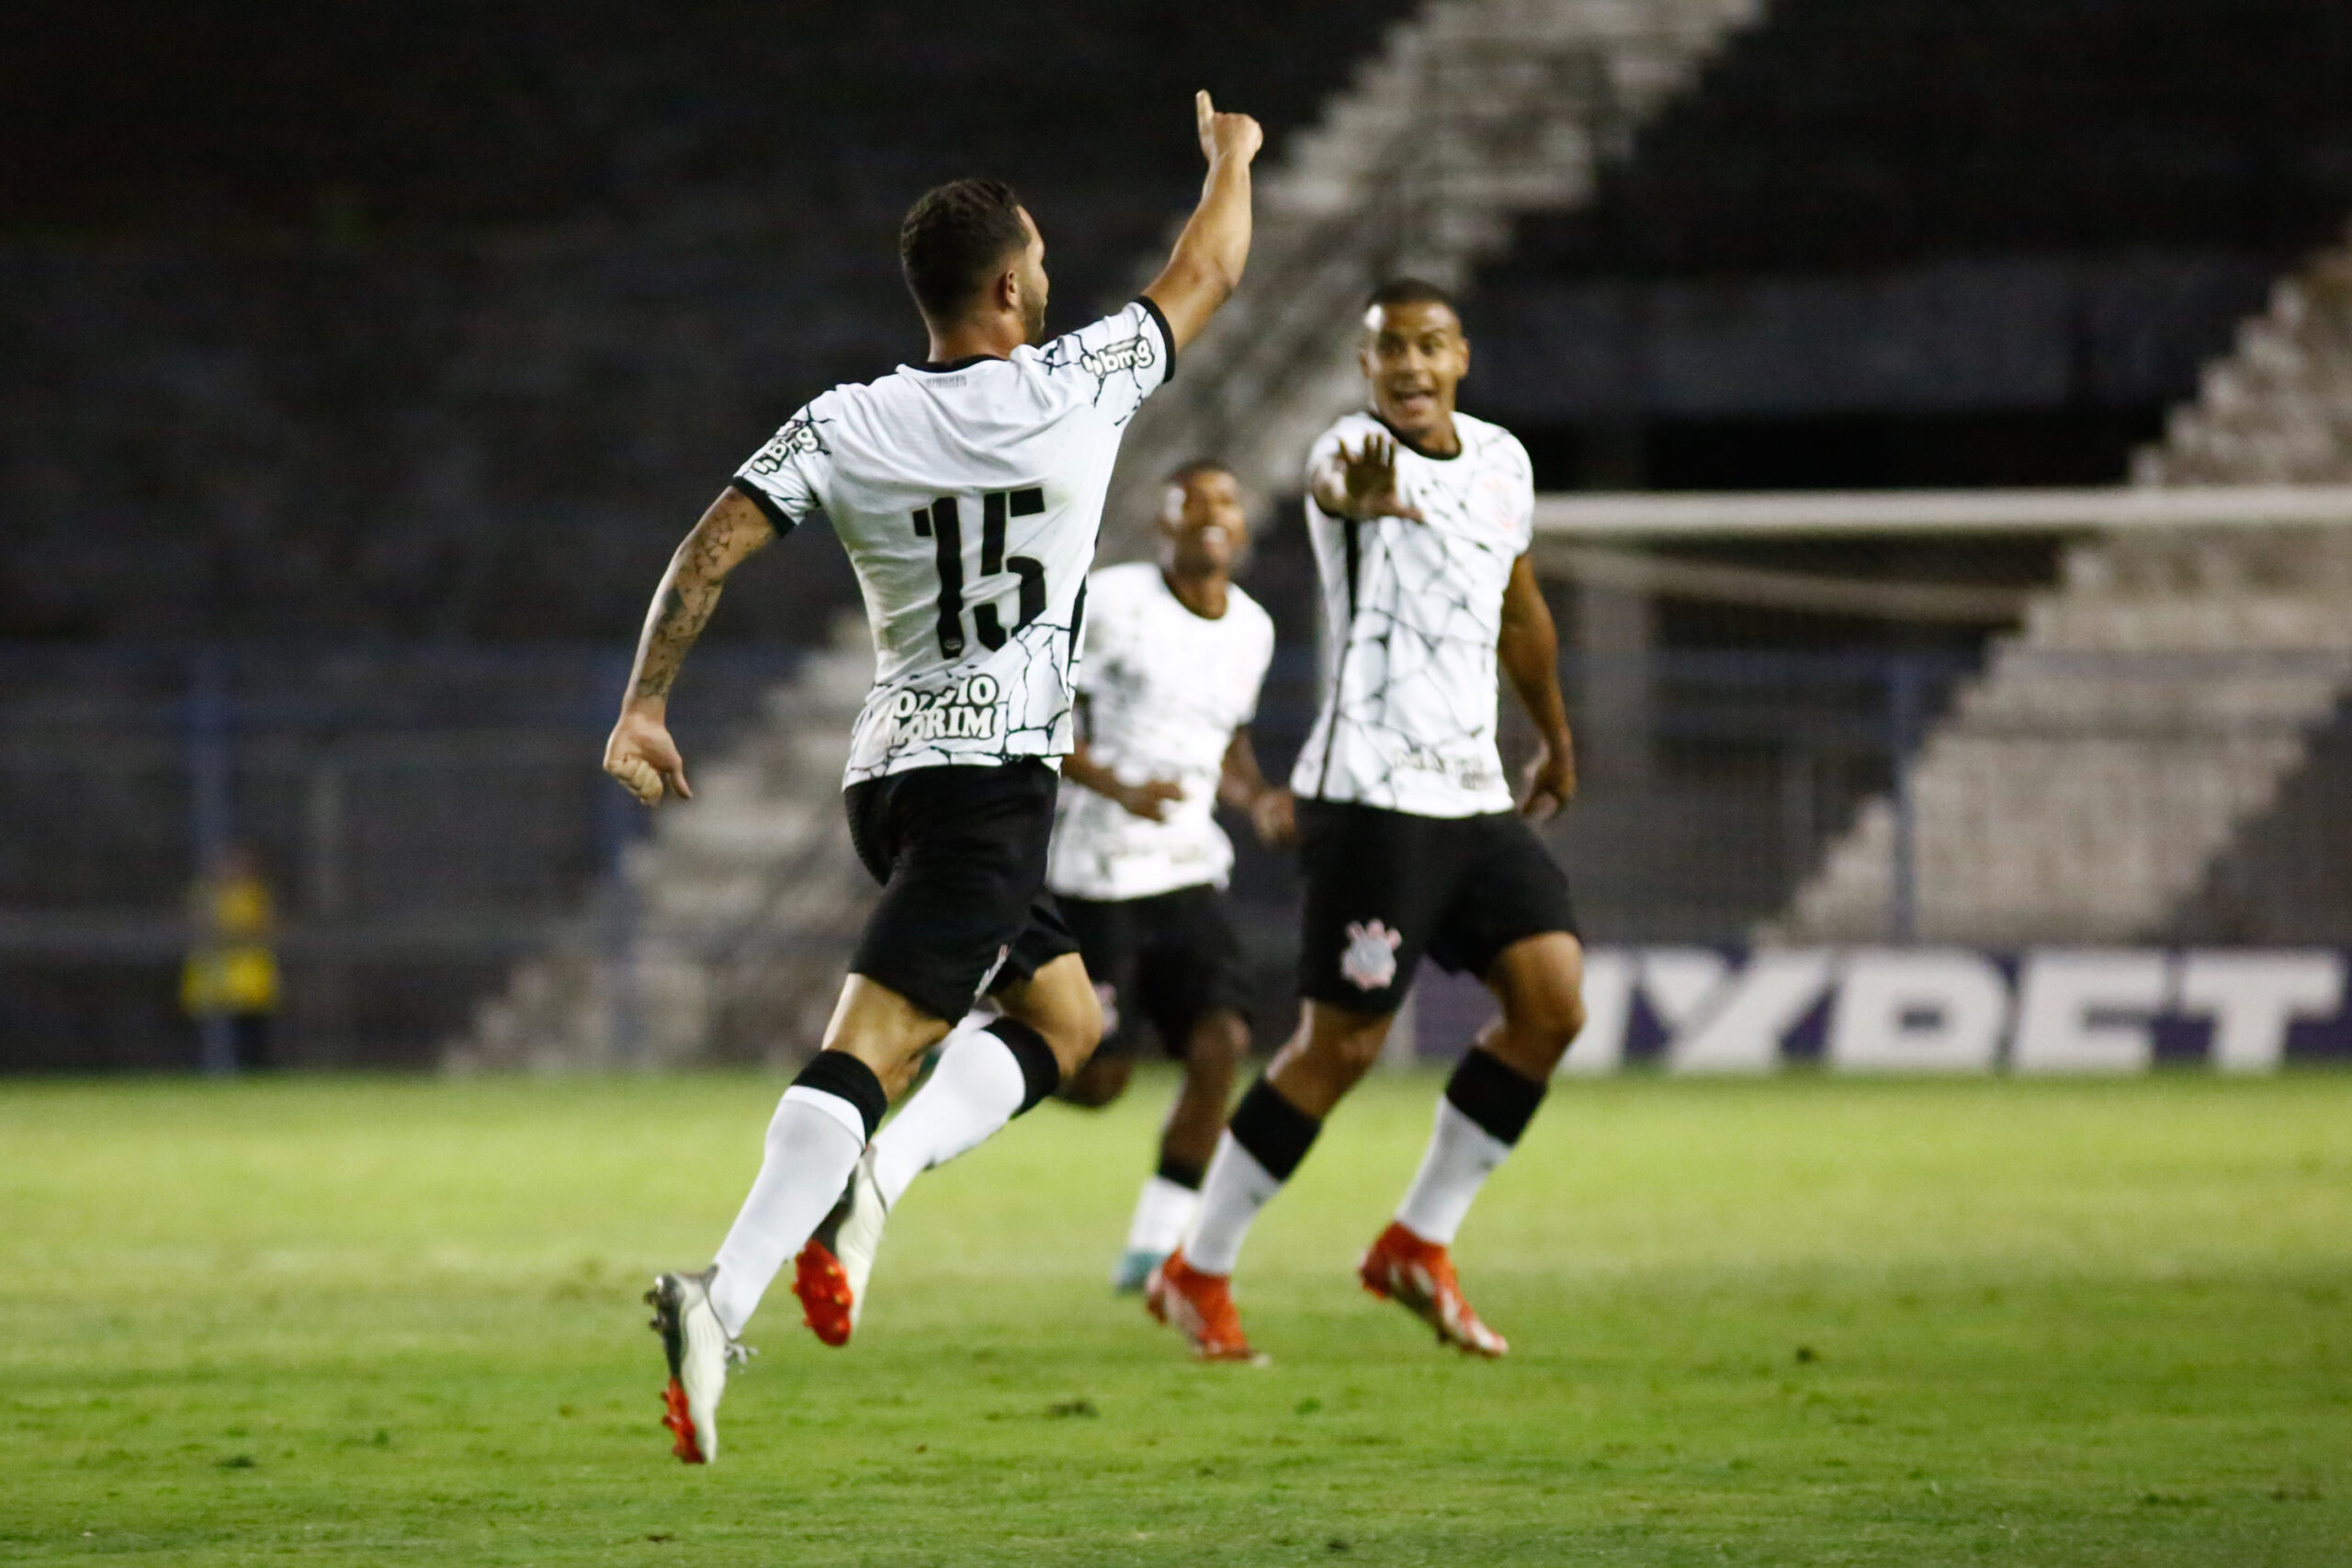 Em jogo movimentado, Corinthians vence Pato Basquete no NBB